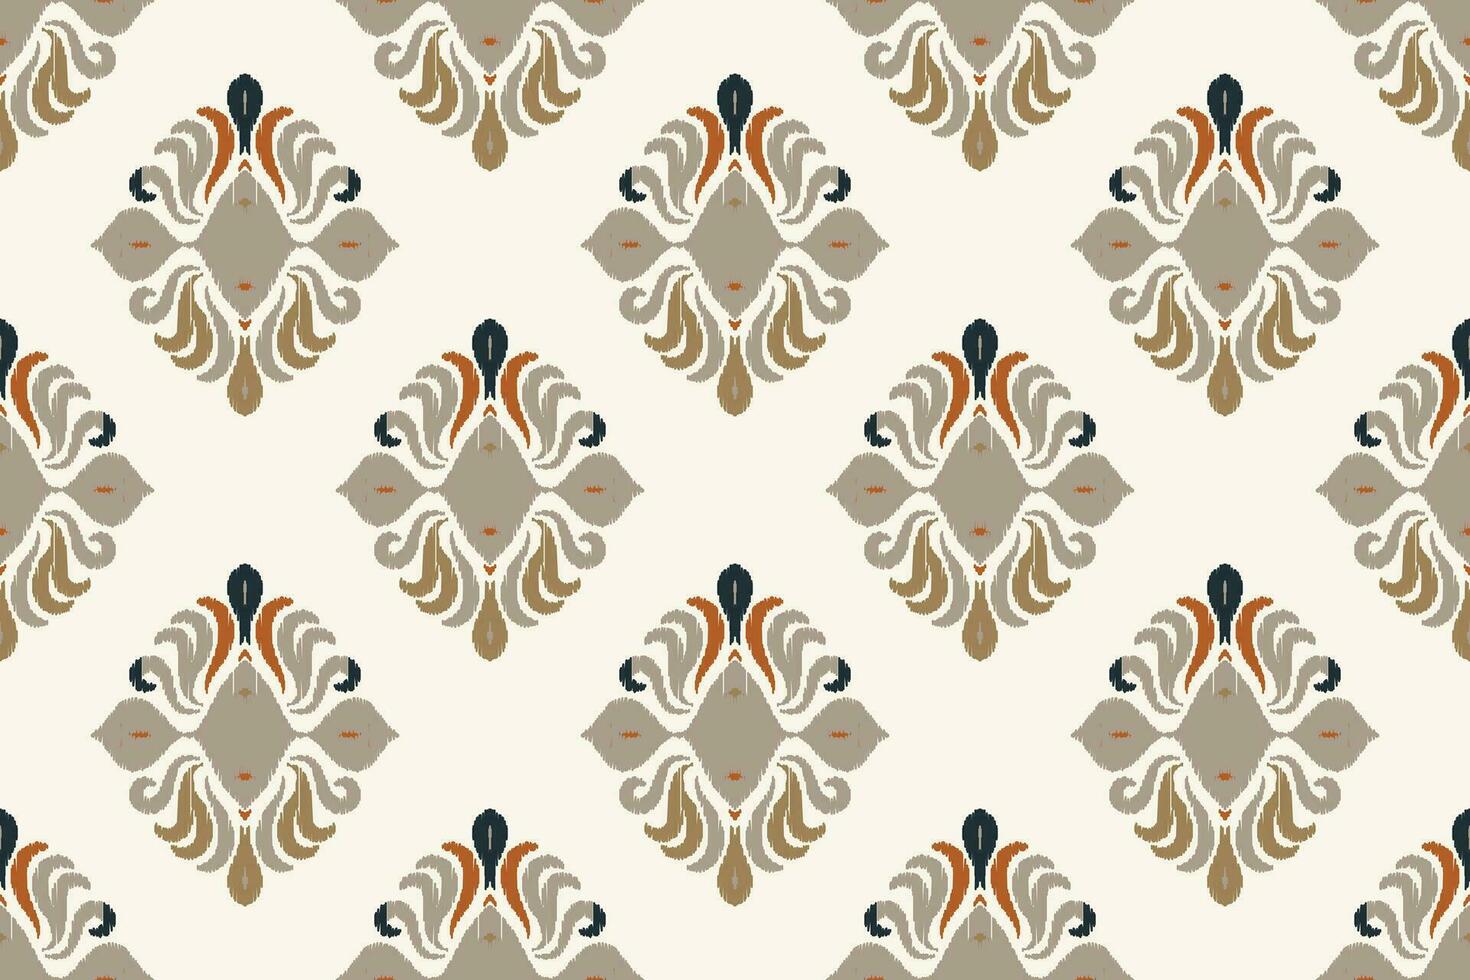 motiv ikat paisley broderi bakgrund. ikat blommor geometrisk etnisk orientalisk mönster traditionell.aztec stil abstrakt vektor illustration.design för textur, tyg, kläder, inslagning, sarong.